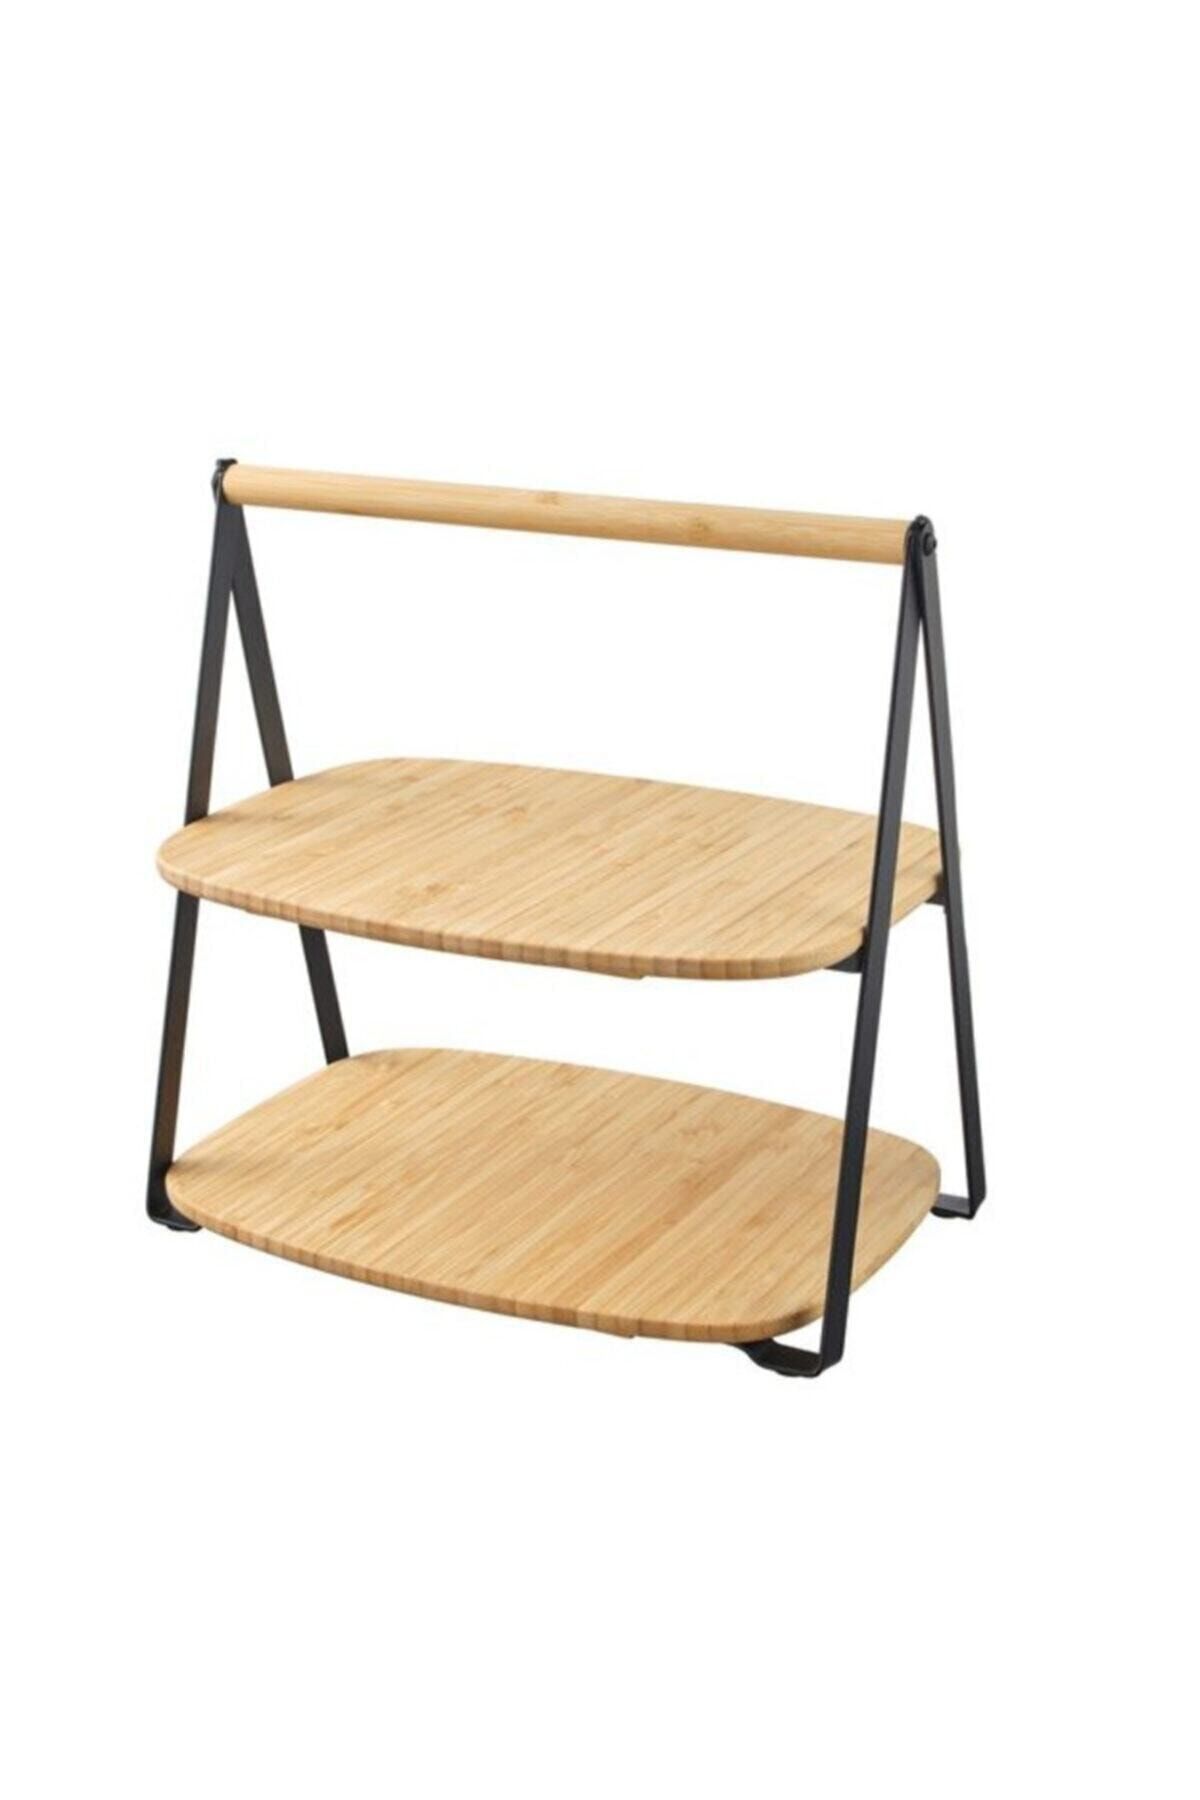 IKEA Fullspackad Servis Standı Bambu 28x20 Cm